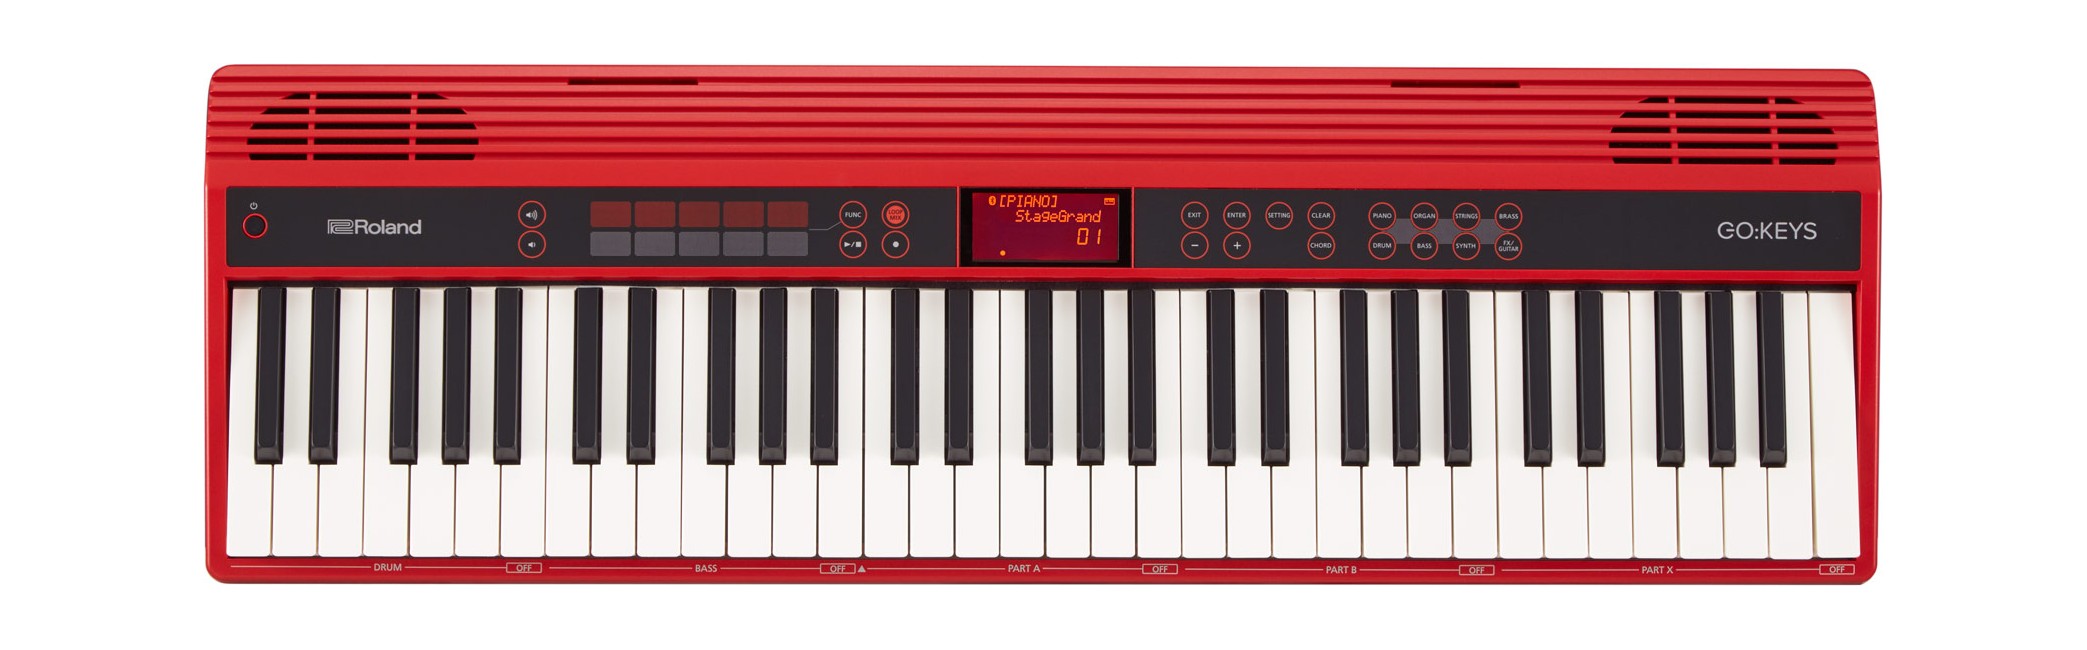 Roland - Go : Keys - Keyboard